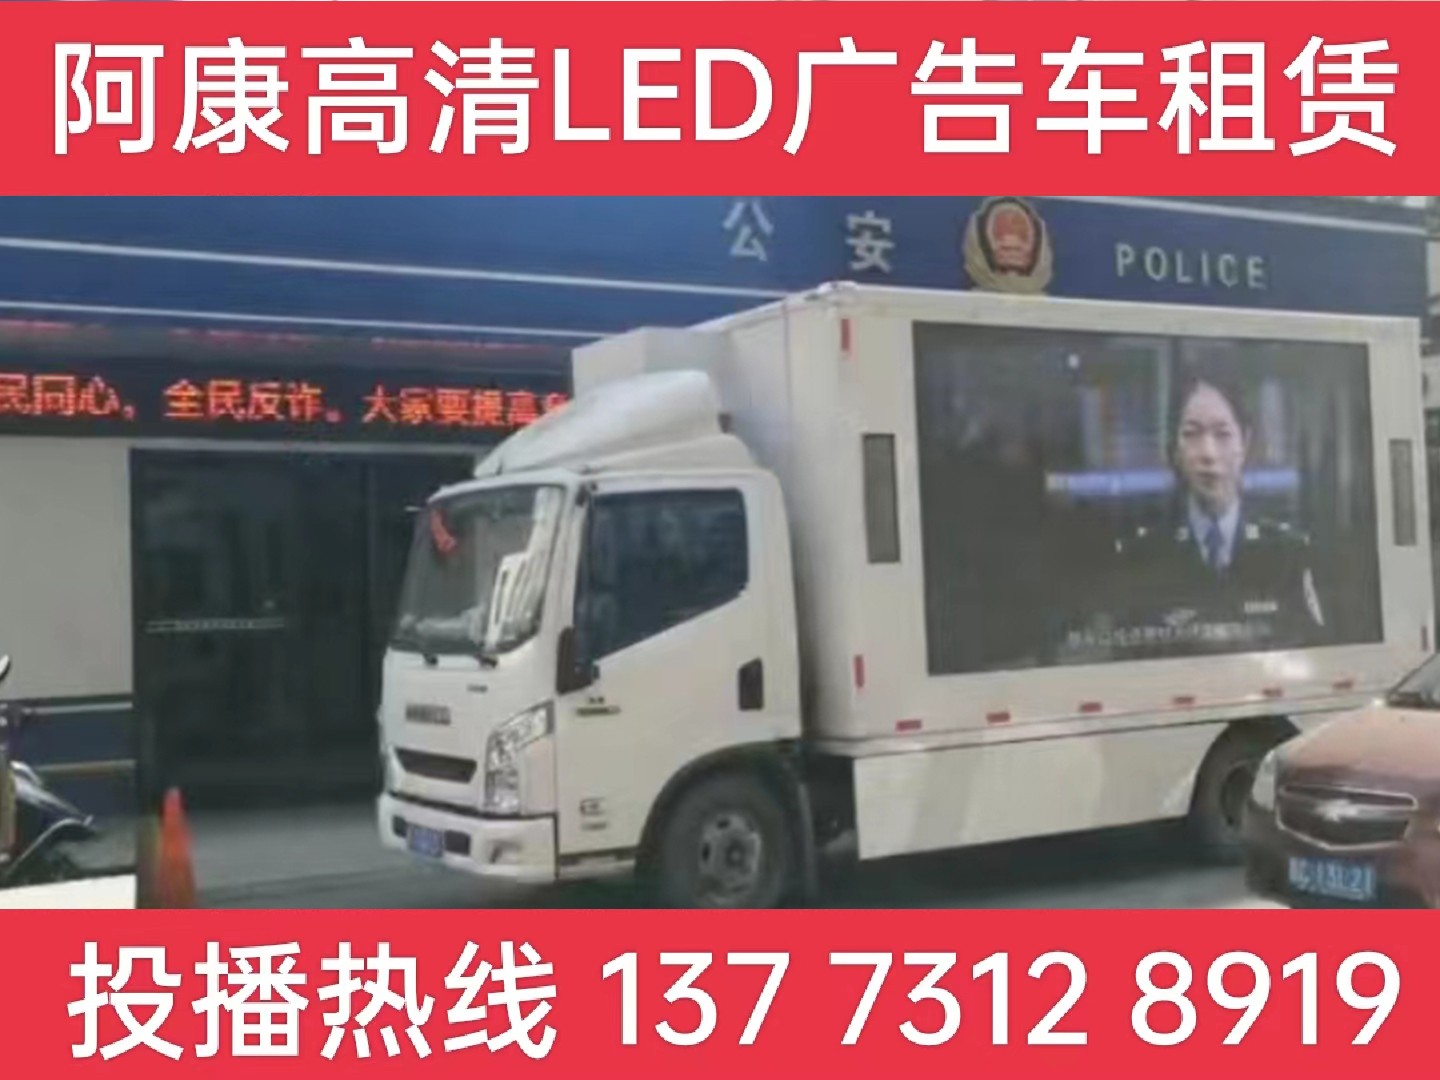 海陵区LED广告车租赁-反诈宣传